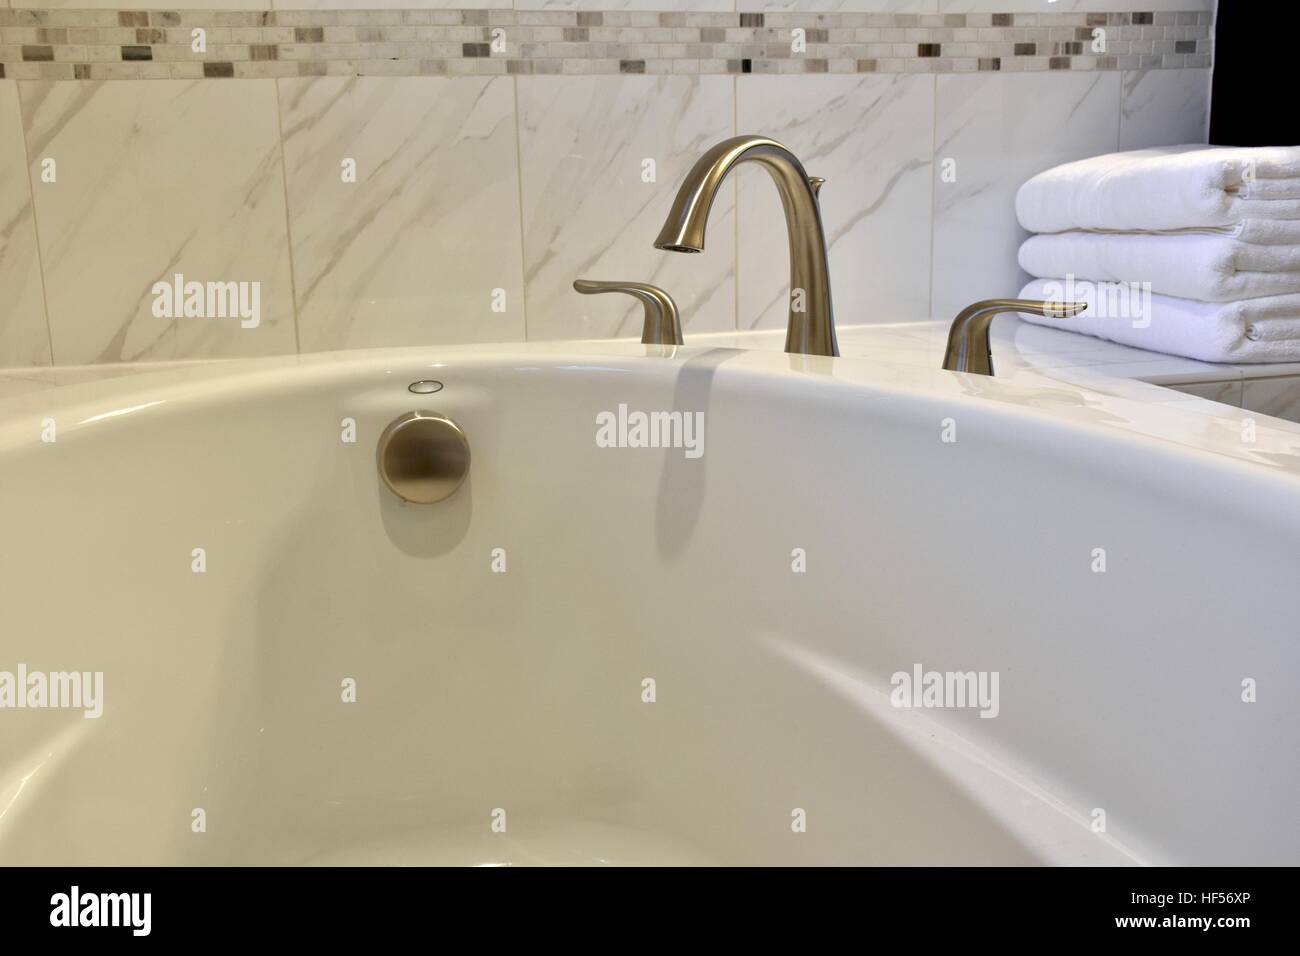 Stanza da bagno in marmo bianco con asciugamani posa accanto alla vasca Foto Stock